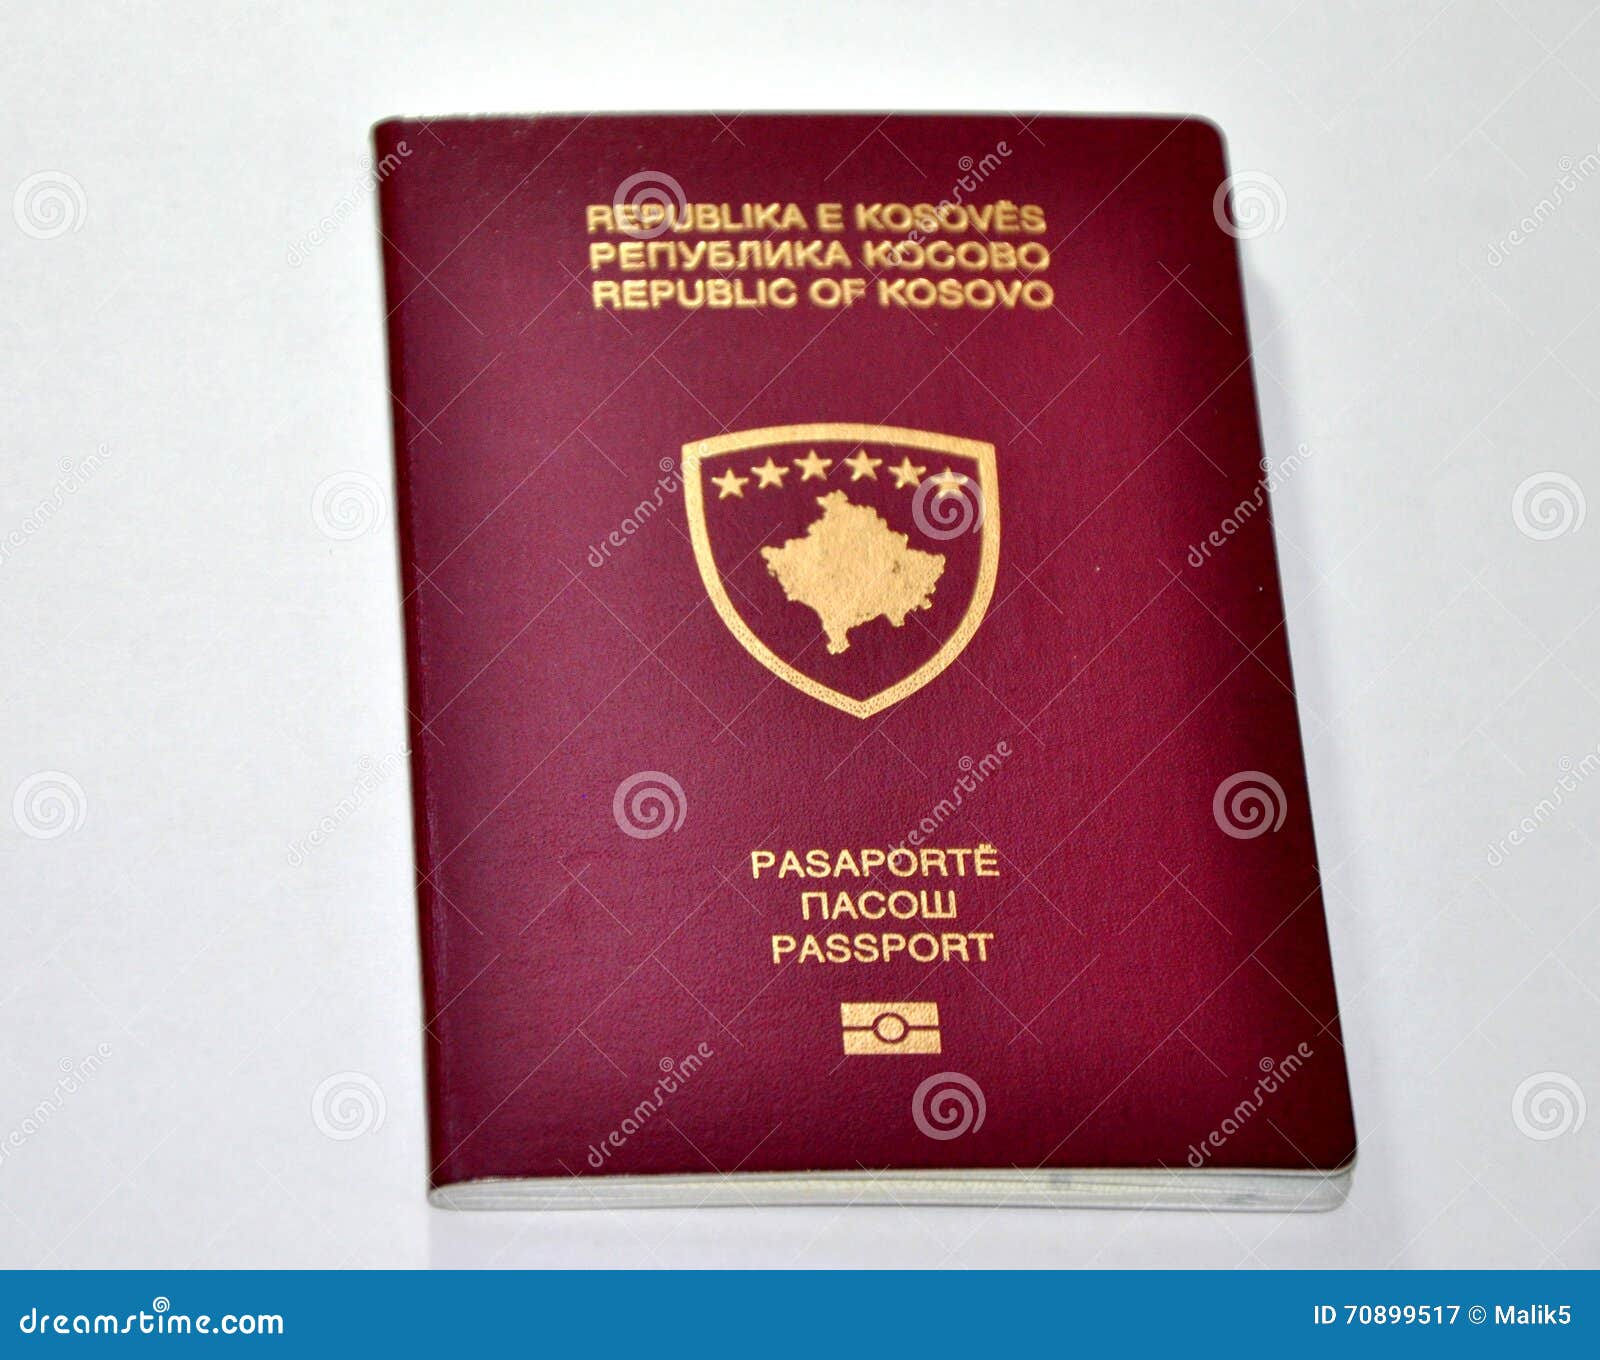 kosovo new passport